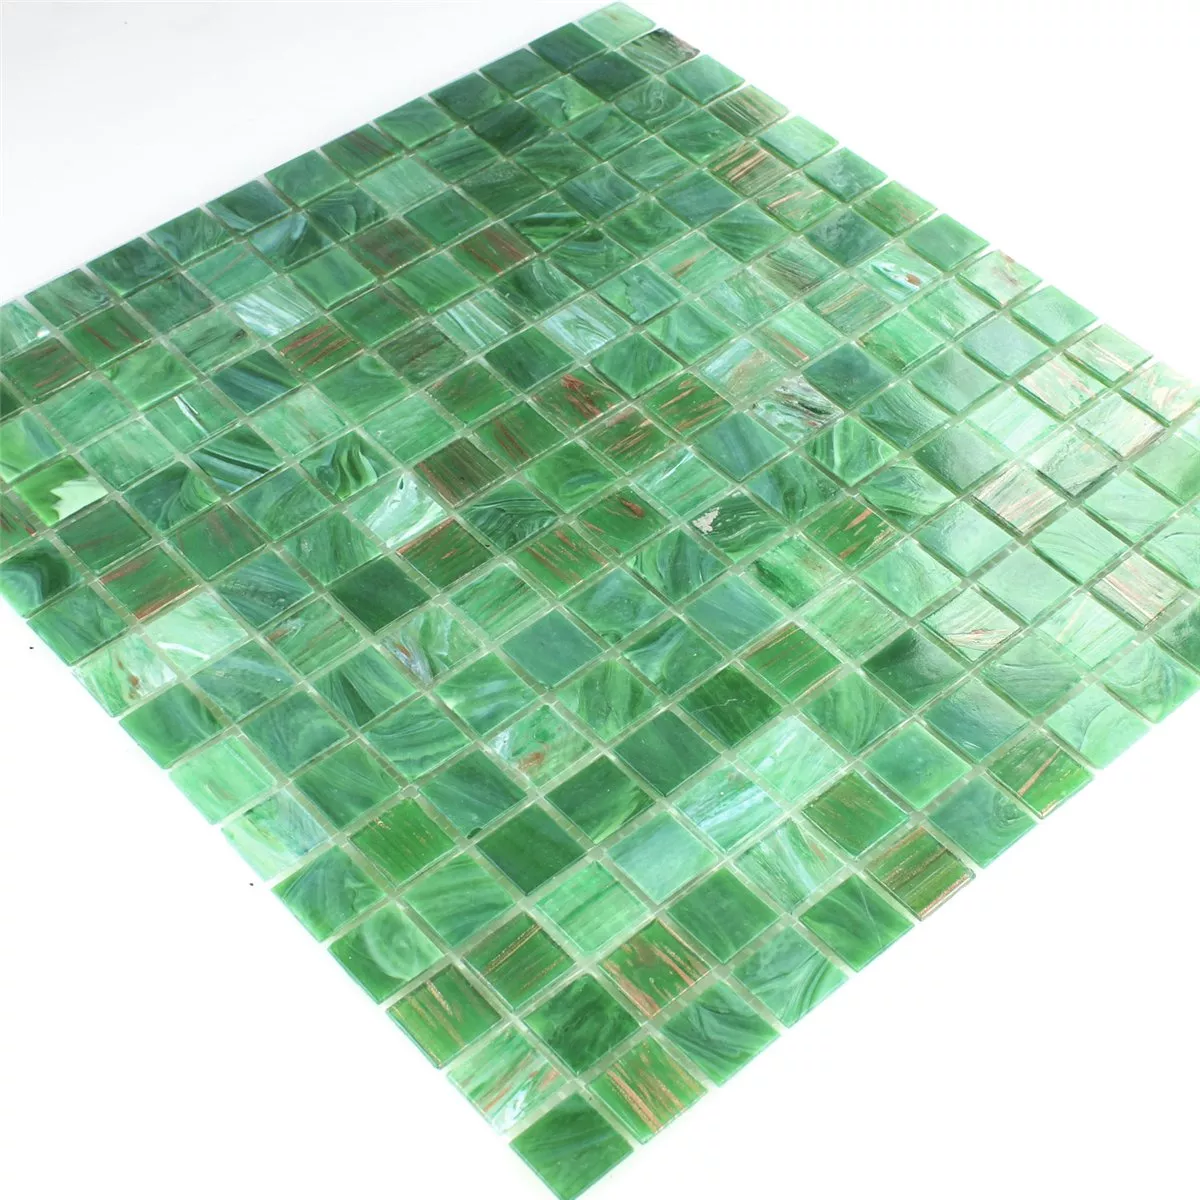 Glass Effect Mosaic Tiles Gold Star Green